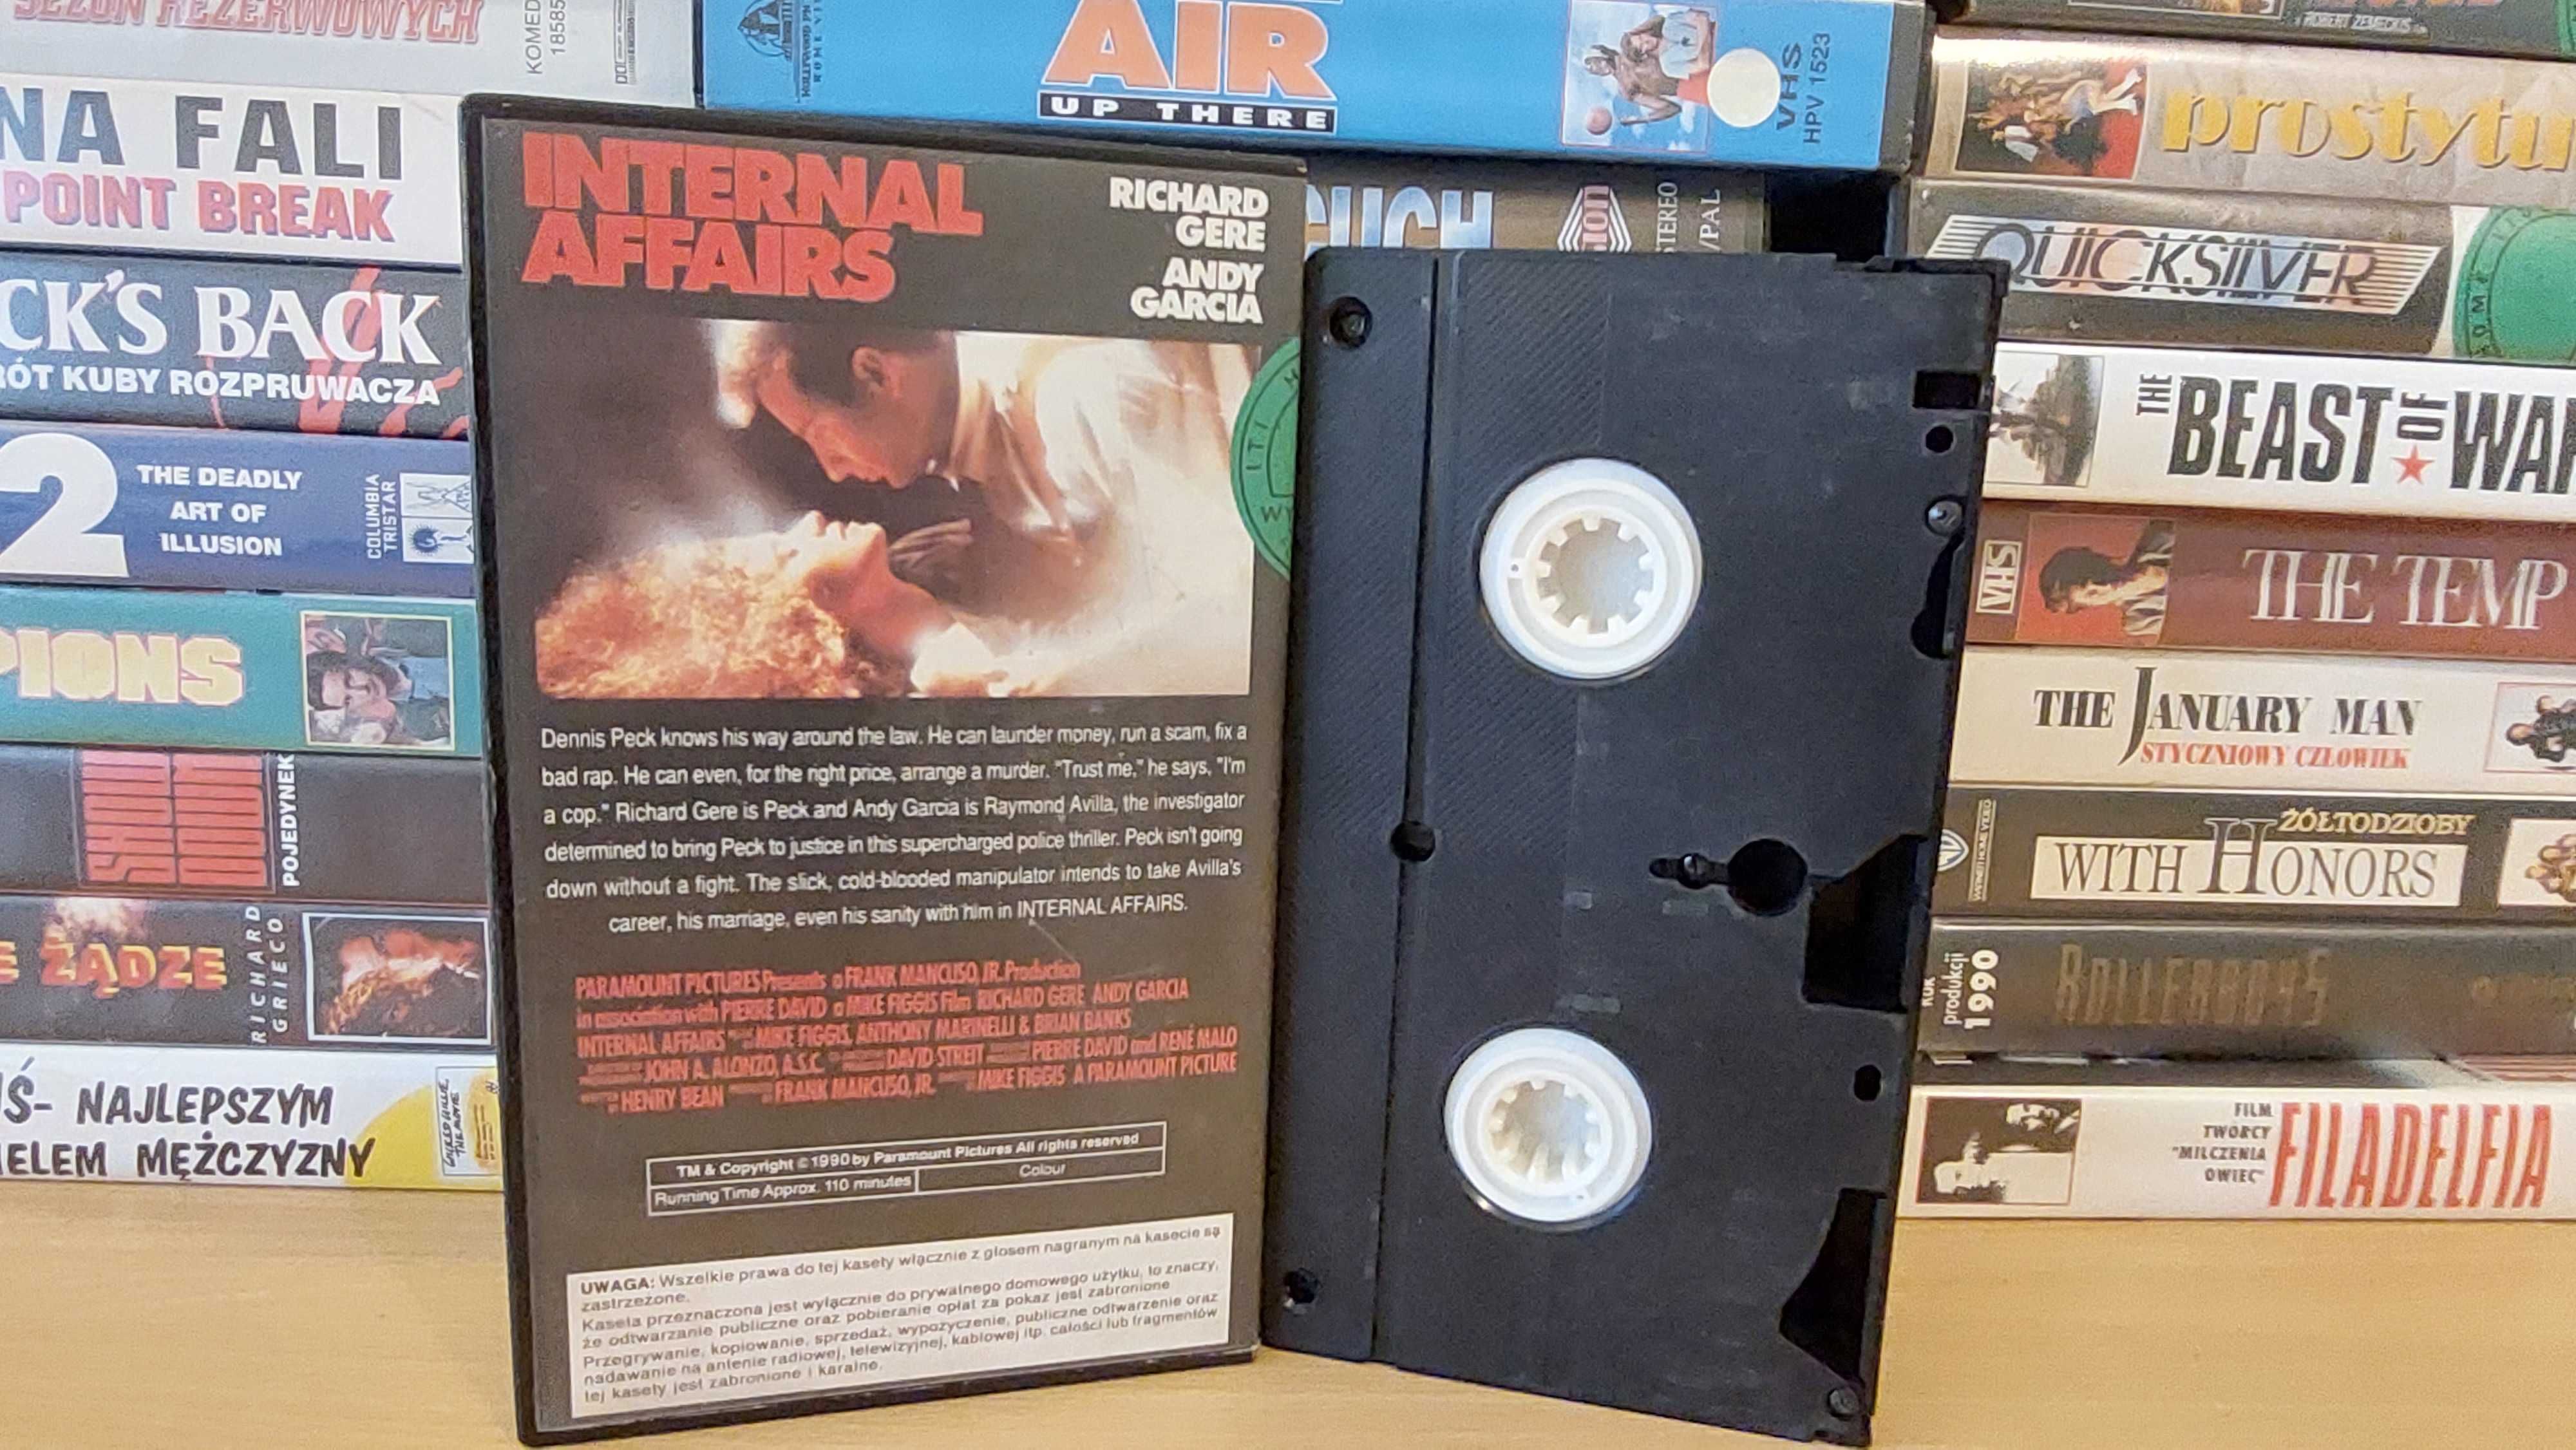 Sprawy Wewnętrzne - (Internal Affairs) - VHS